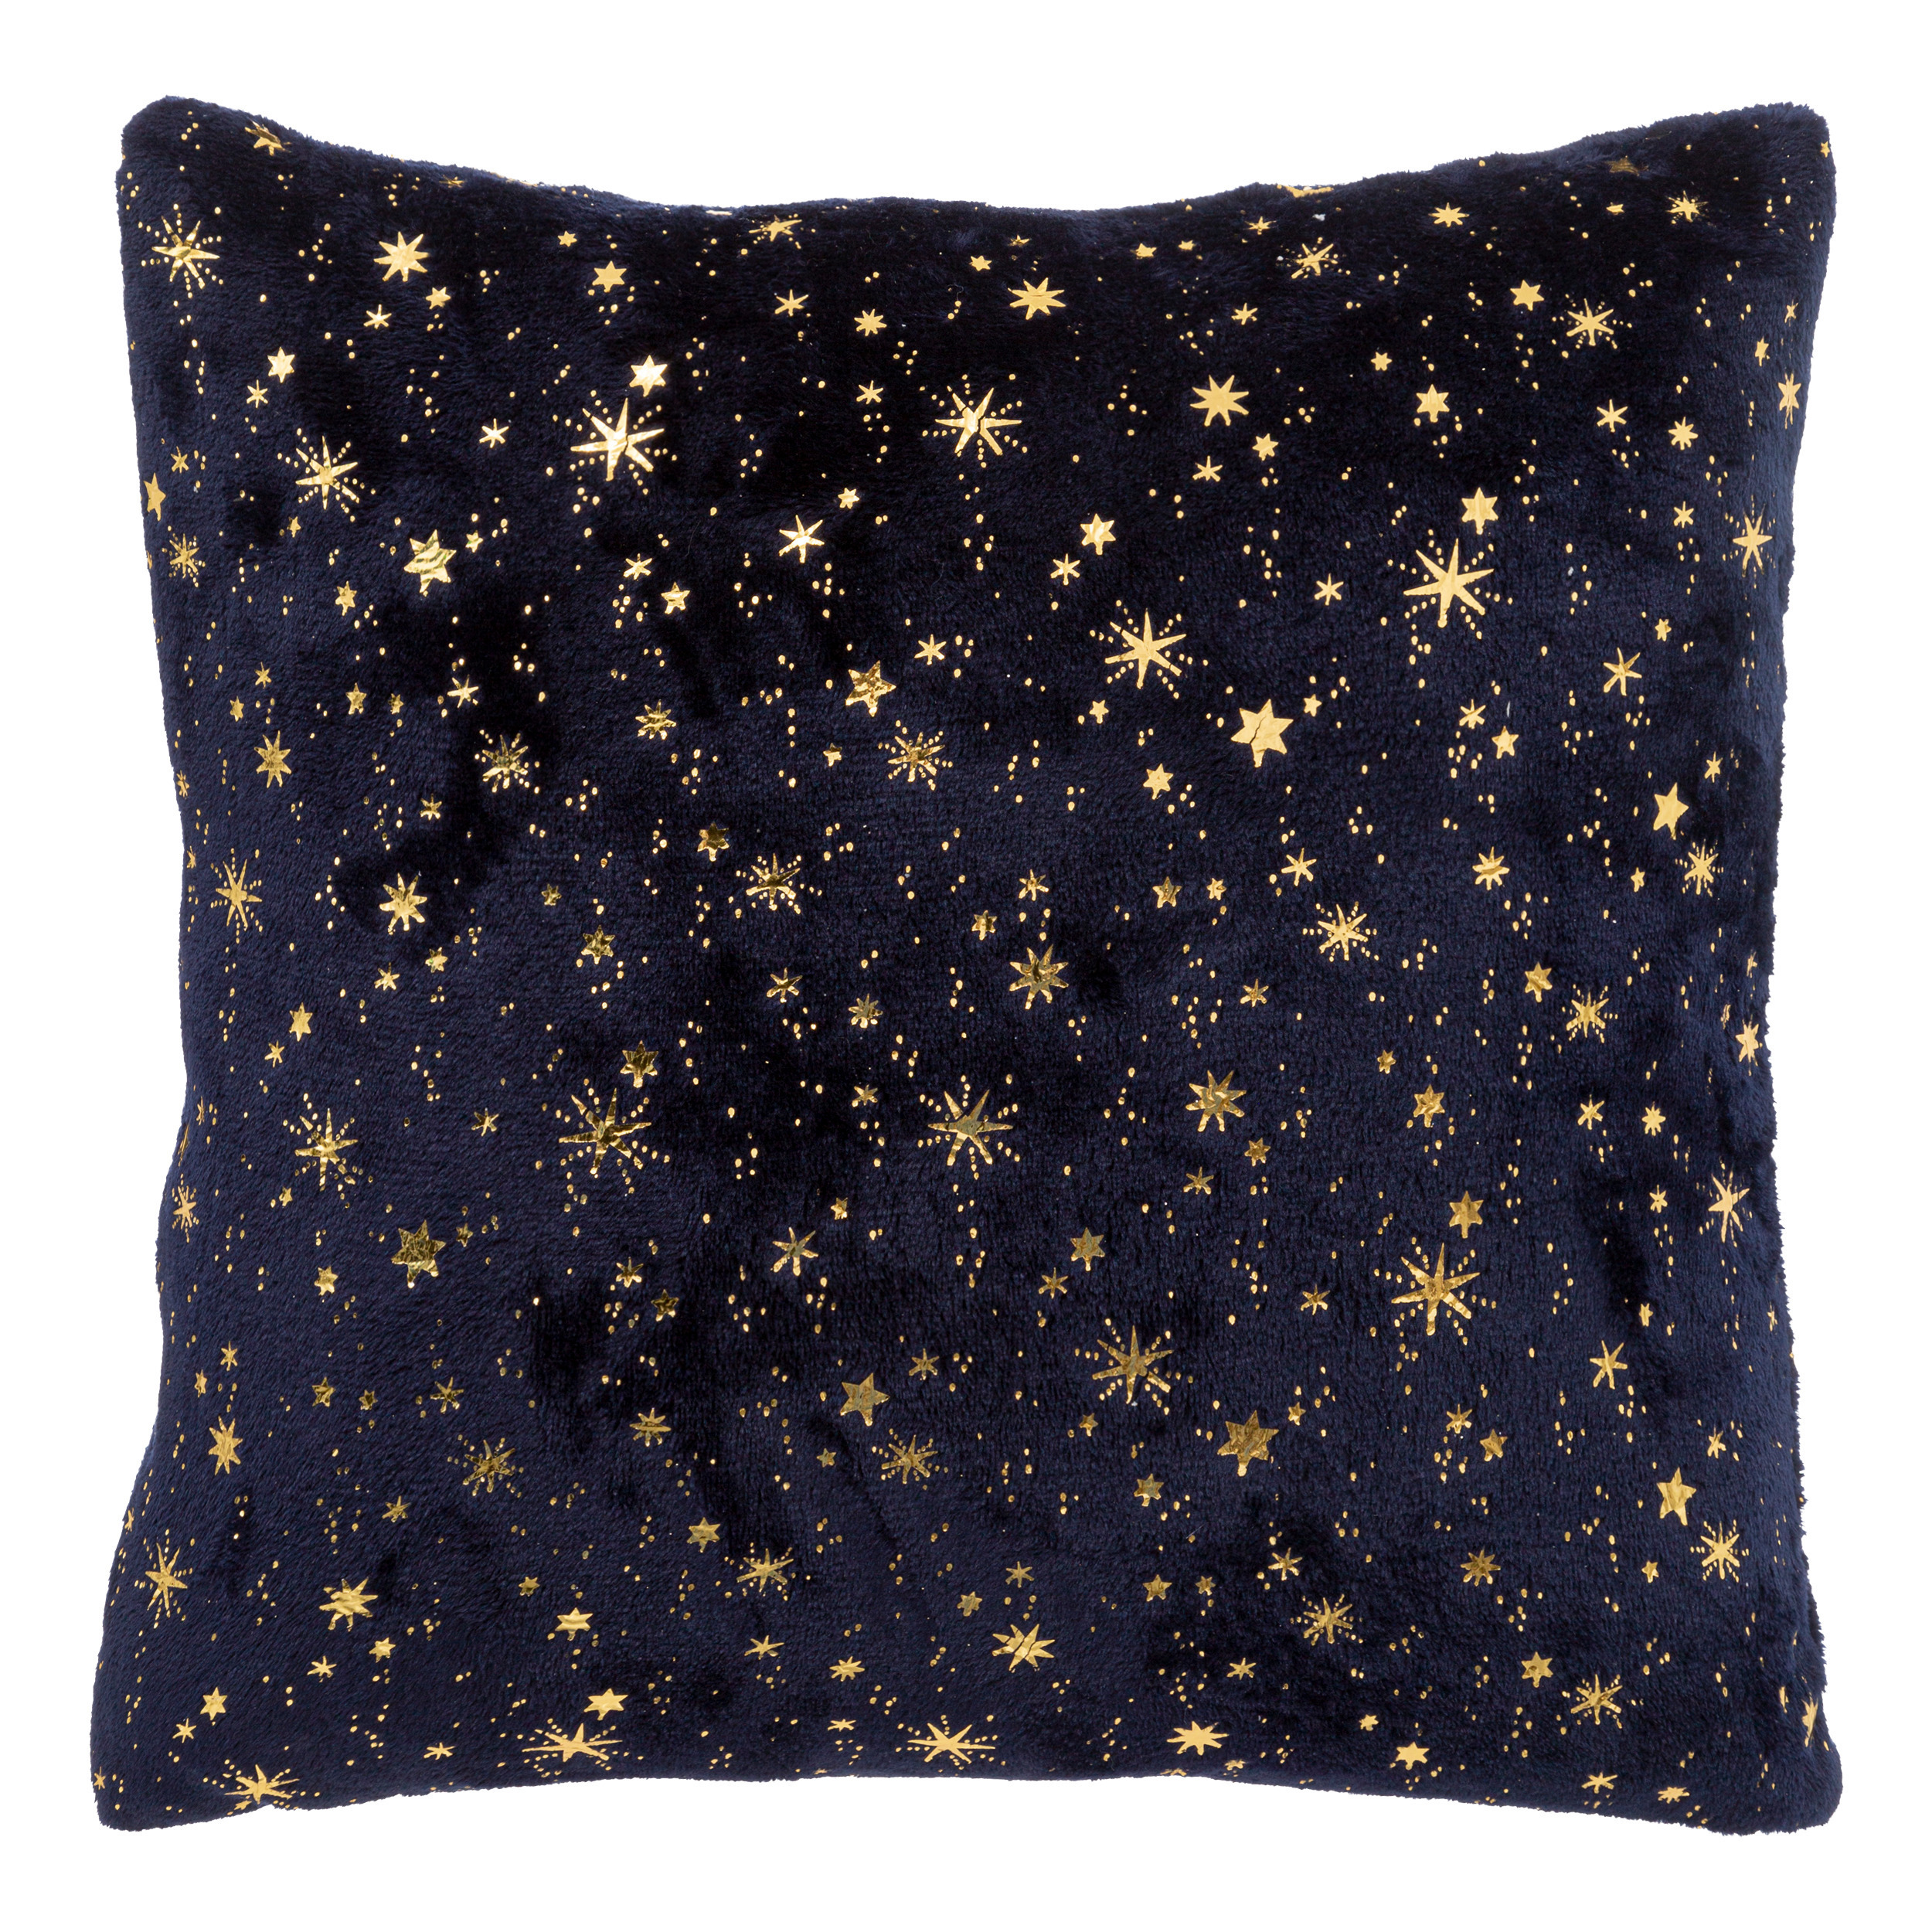 Bank-sier kussen voor binnen sterrenhemel blauw-goud 40 x 40 cm